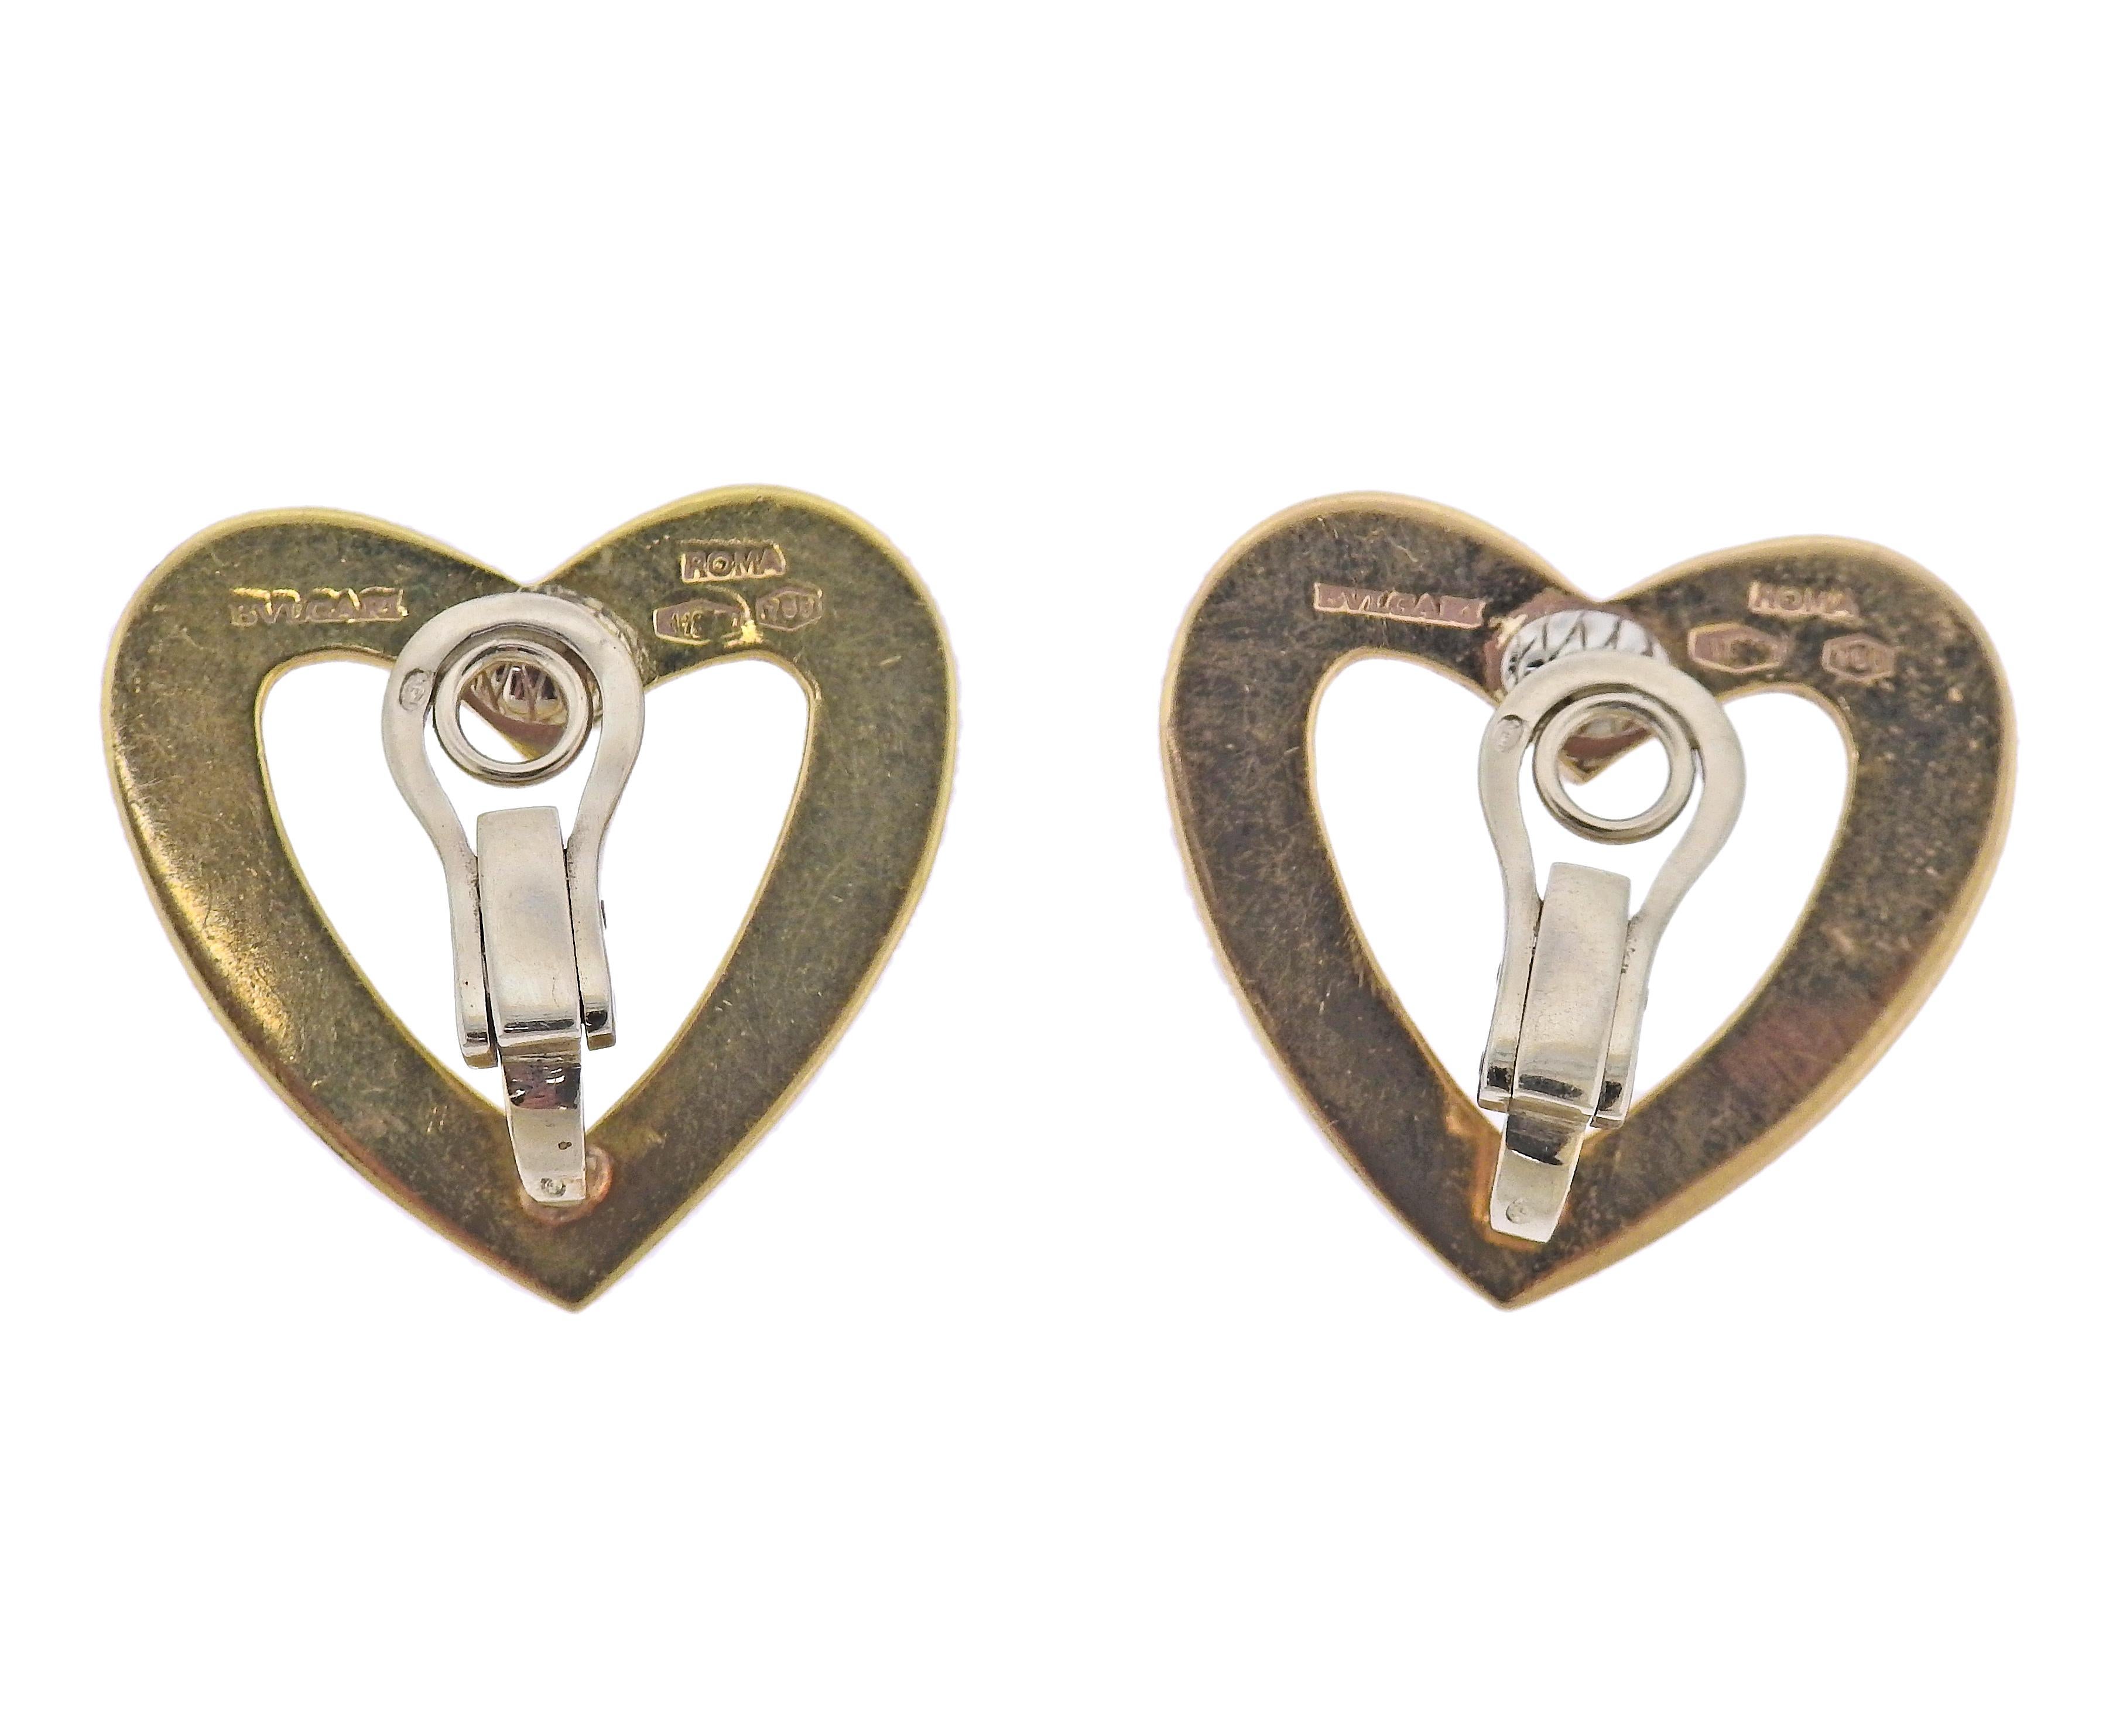 Ein Paar offene Herzohrringe aus 18 Karat Gold von Bvlgari. Die Ohrringe messen 30 mm x 29 mm. Gezeichnet: Bvlgari, römisch, 750. Gewicht - 26,2 Gramm.